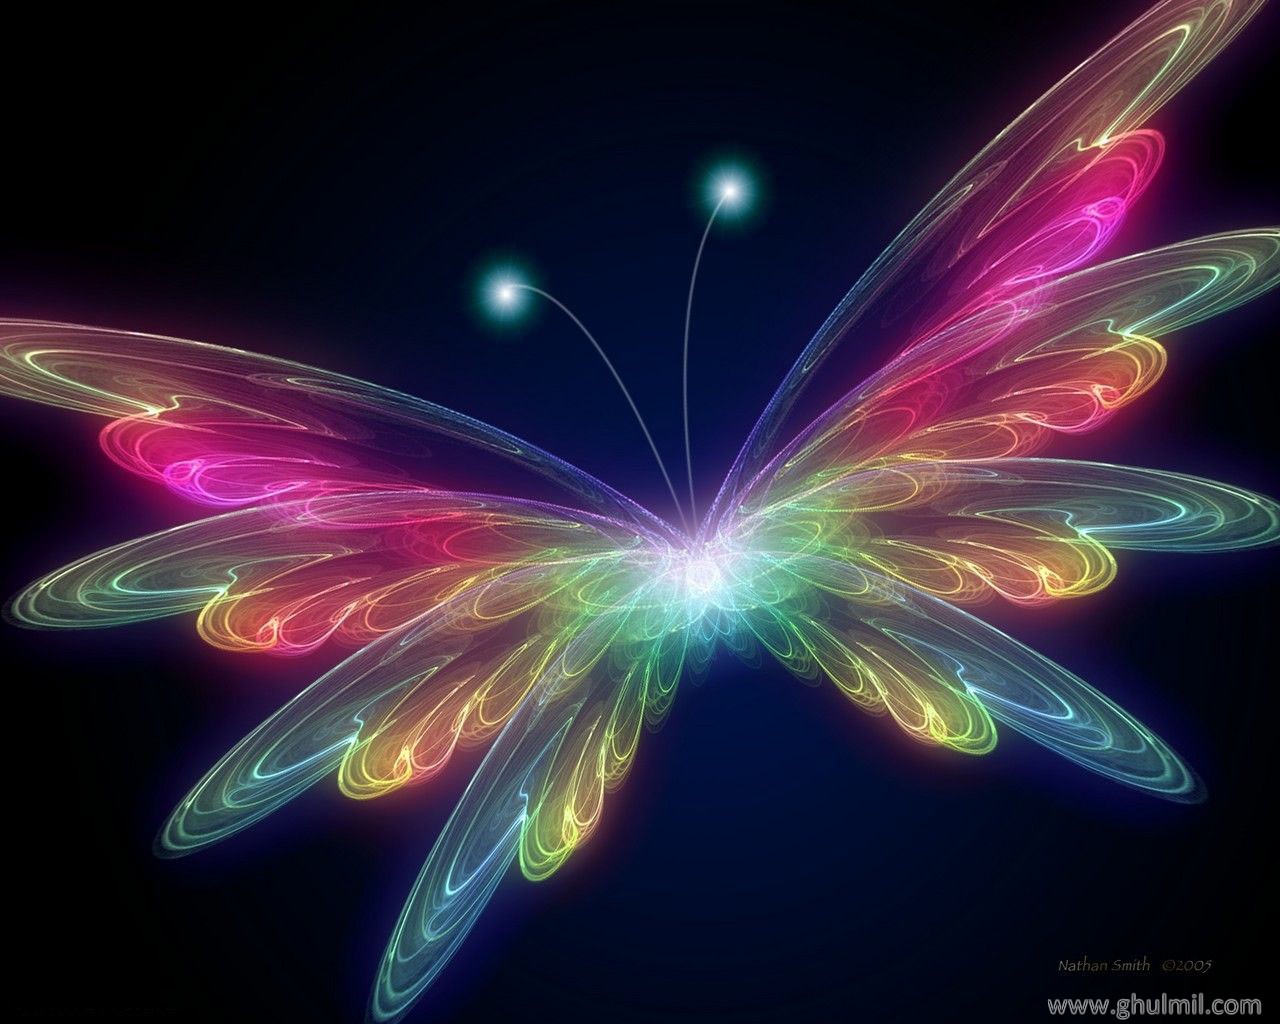 Butterflies images 3D Butterfly wallpaper wallpaper photos 31063788 1280x1024